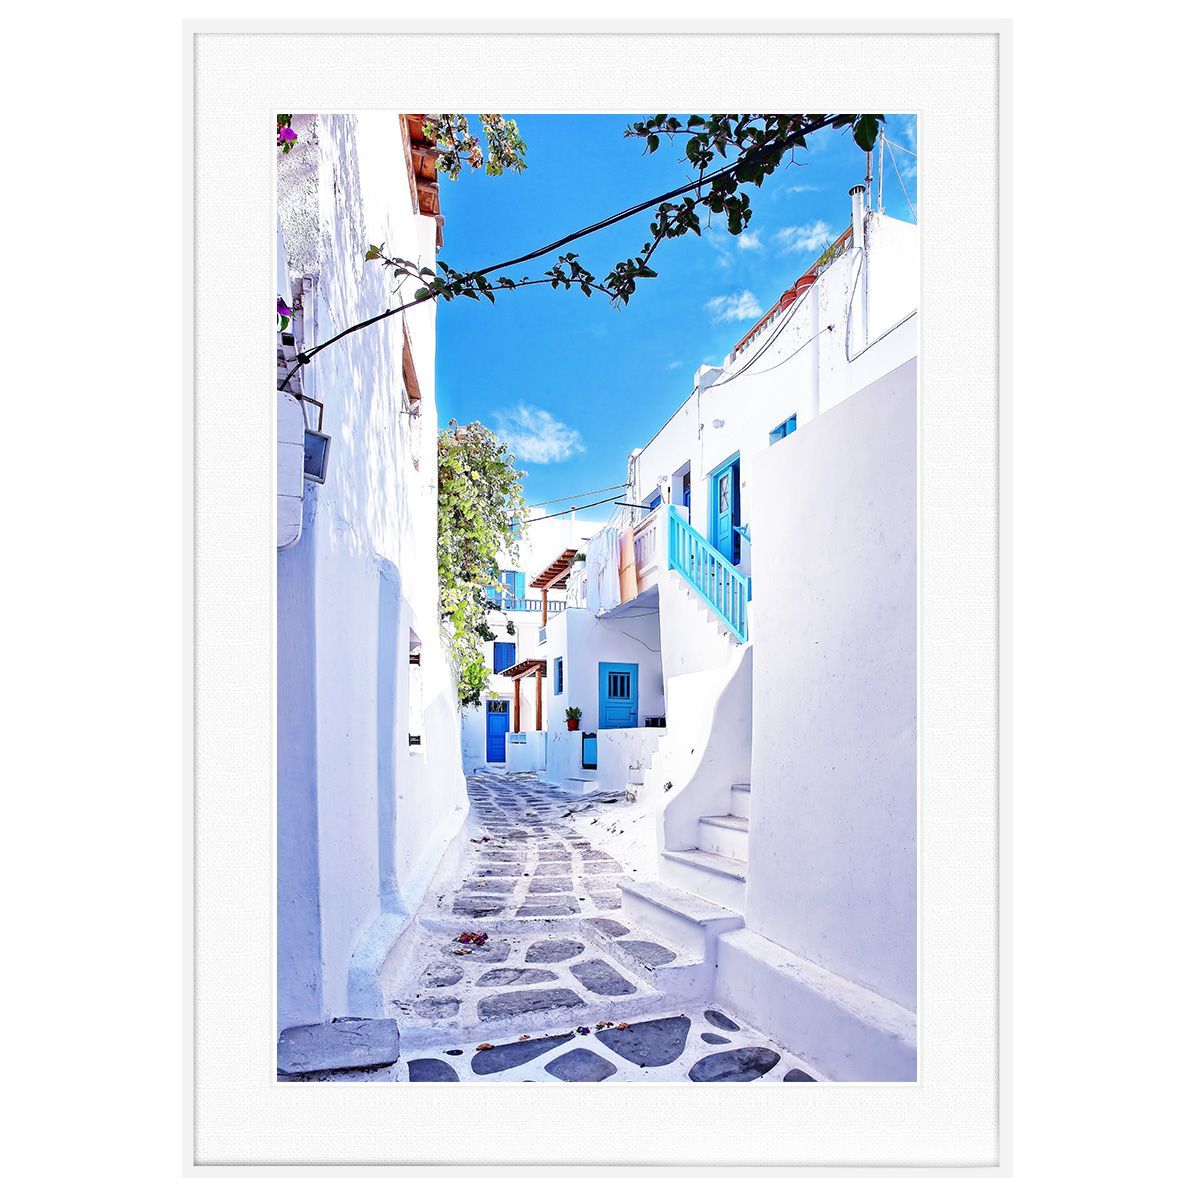 ギリシャ 風景写真 ミコノス島インテリアアートポスター額装 AS1412